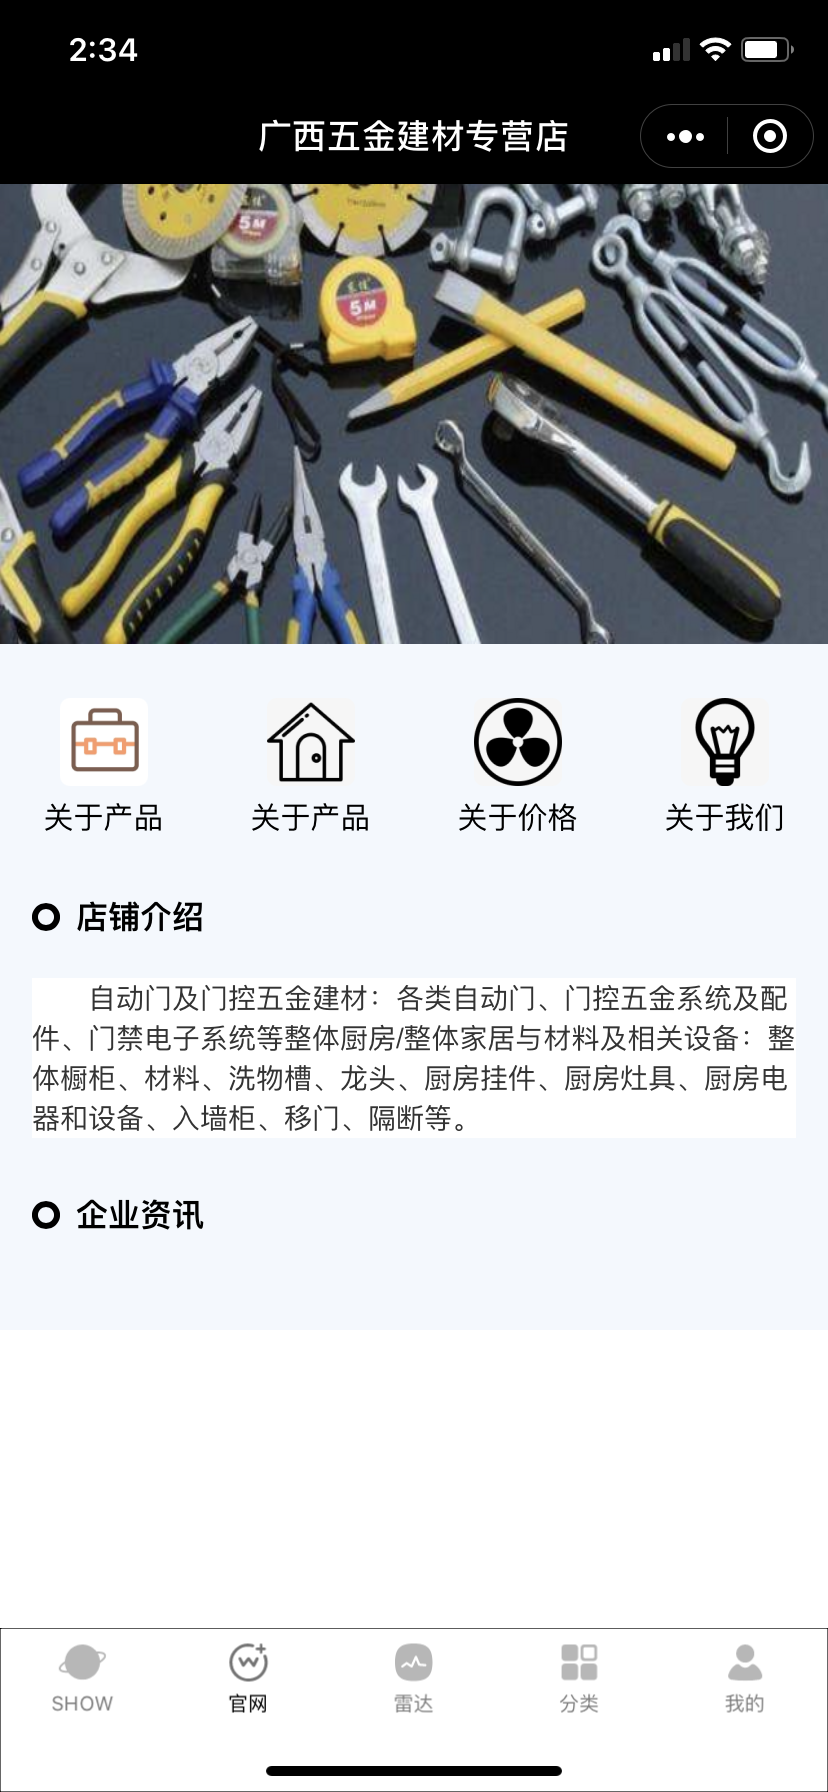 广西五金建材整合行业招商运营资源的专业平台-阳泉之家